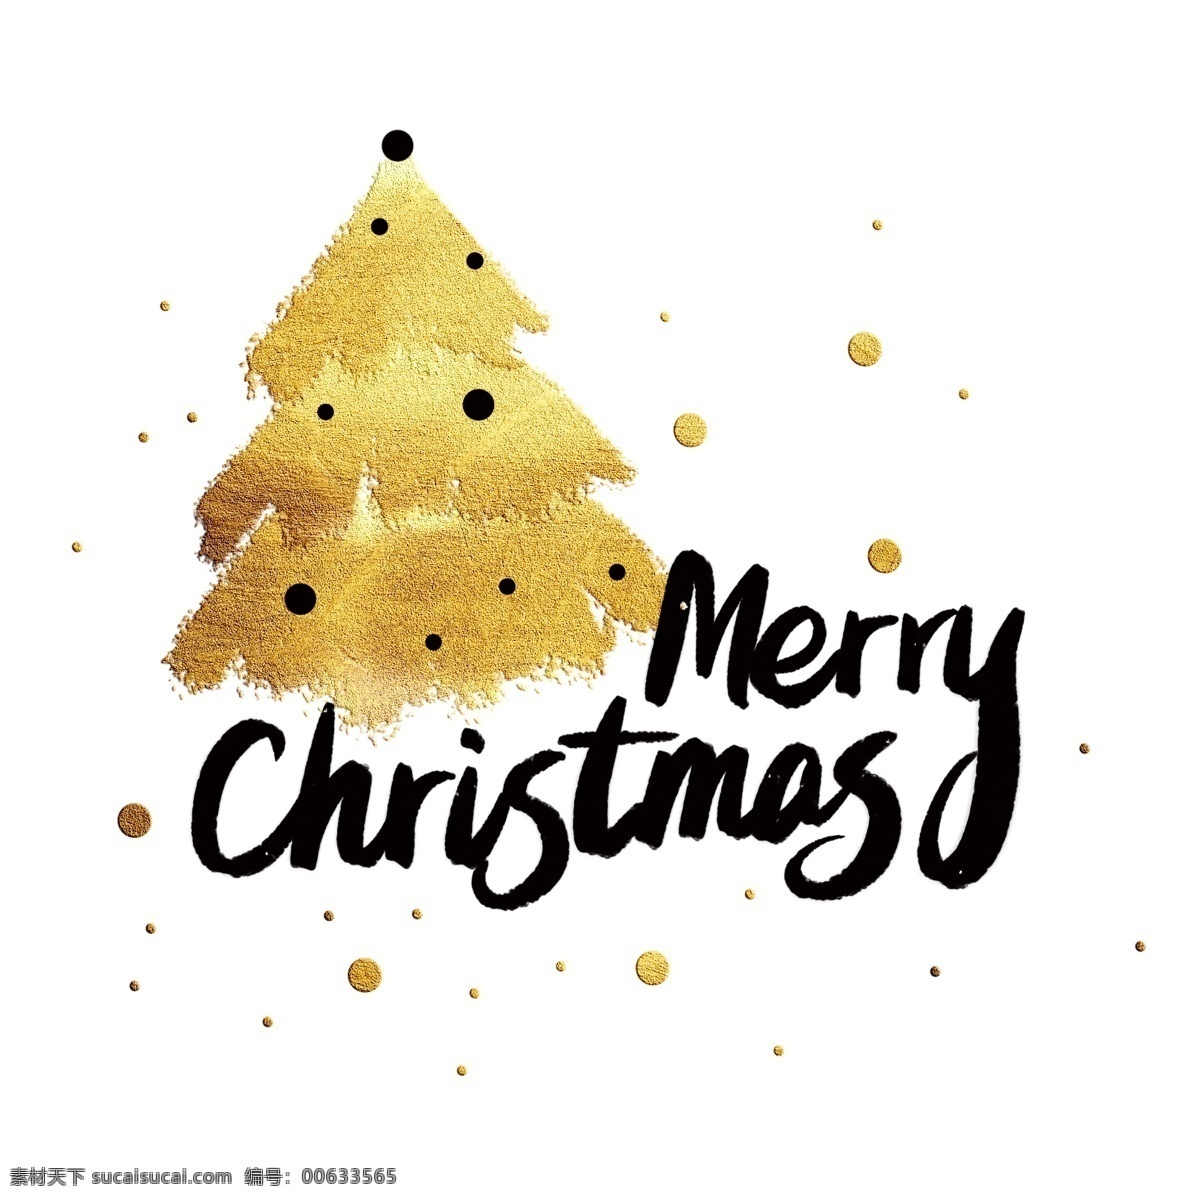 圣诞节 金色 圣诞 字体 merry christmas 圣诞快乐 圣诞树 装饰字 烫金 金粉 分层